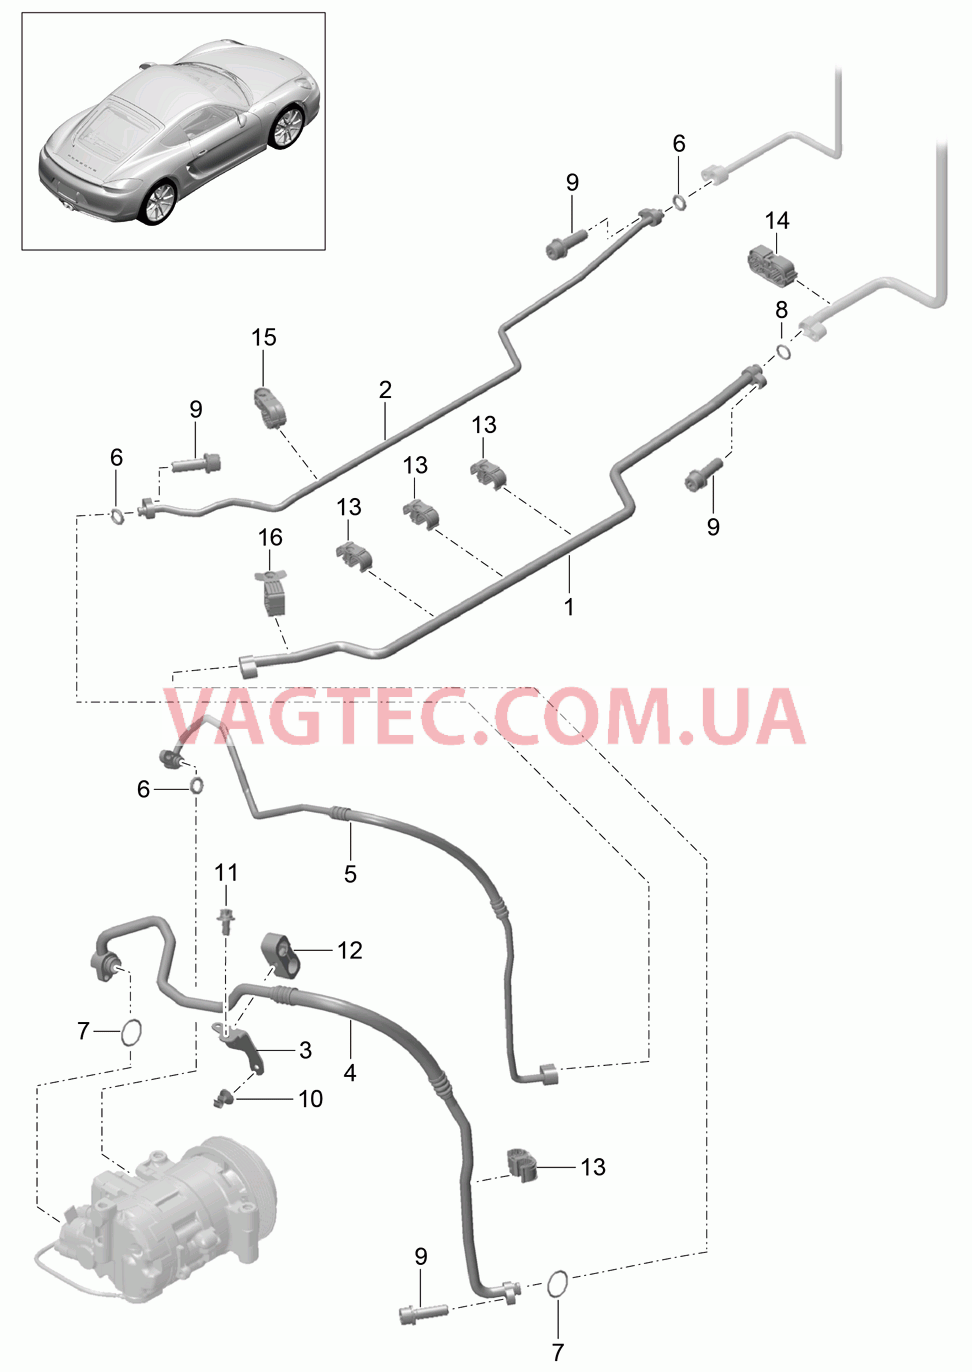 813-025 Циркуляция охлаждающей жидкости, Днище кузова, и, Задняя подвеска для PORSCHE Cayman 2014-2016USA